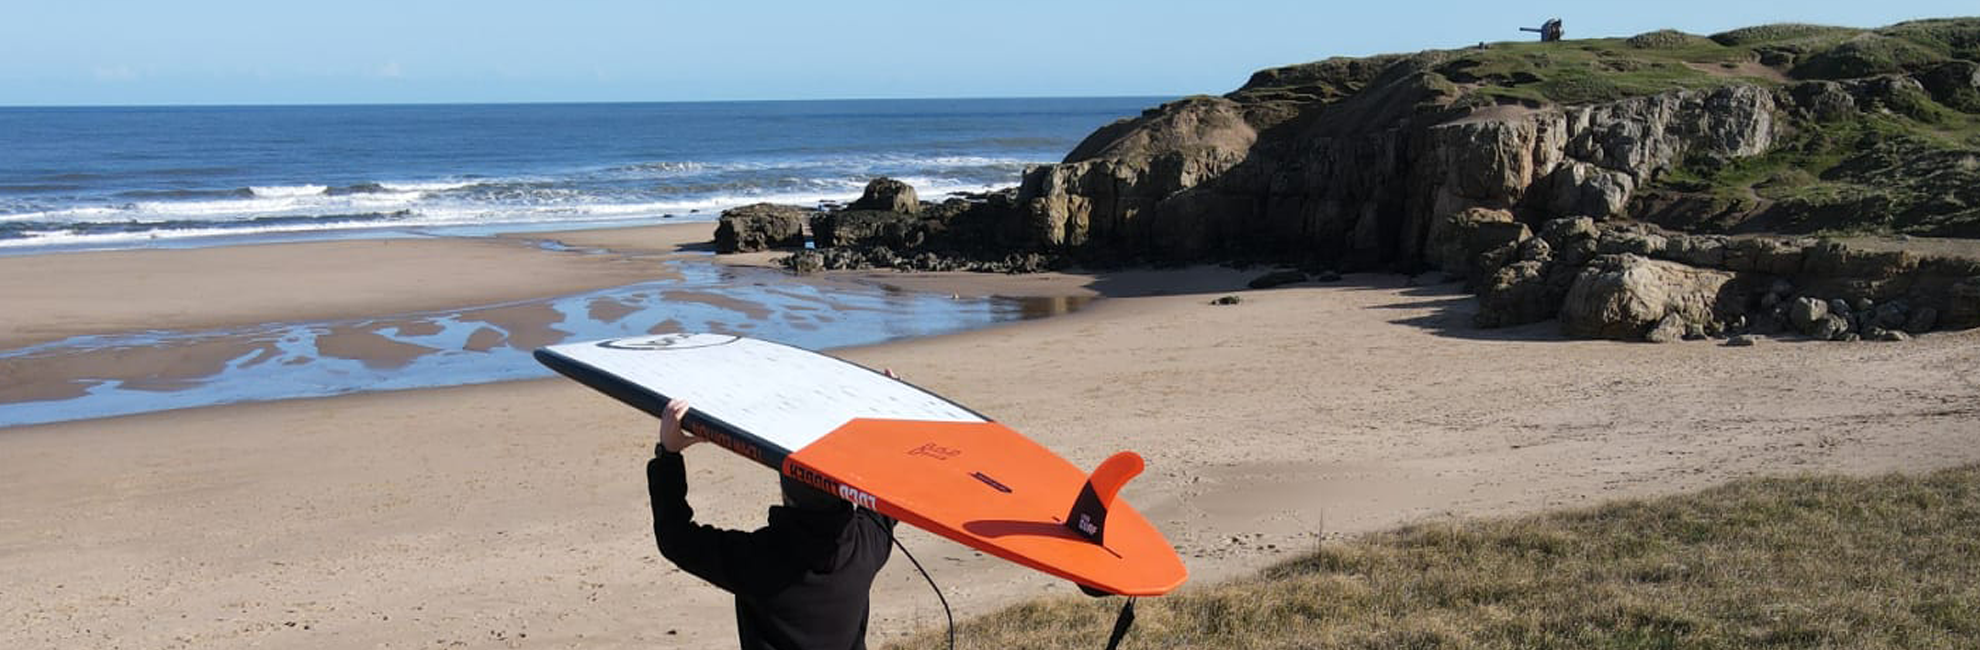 hardboard carried on SUP surfers head